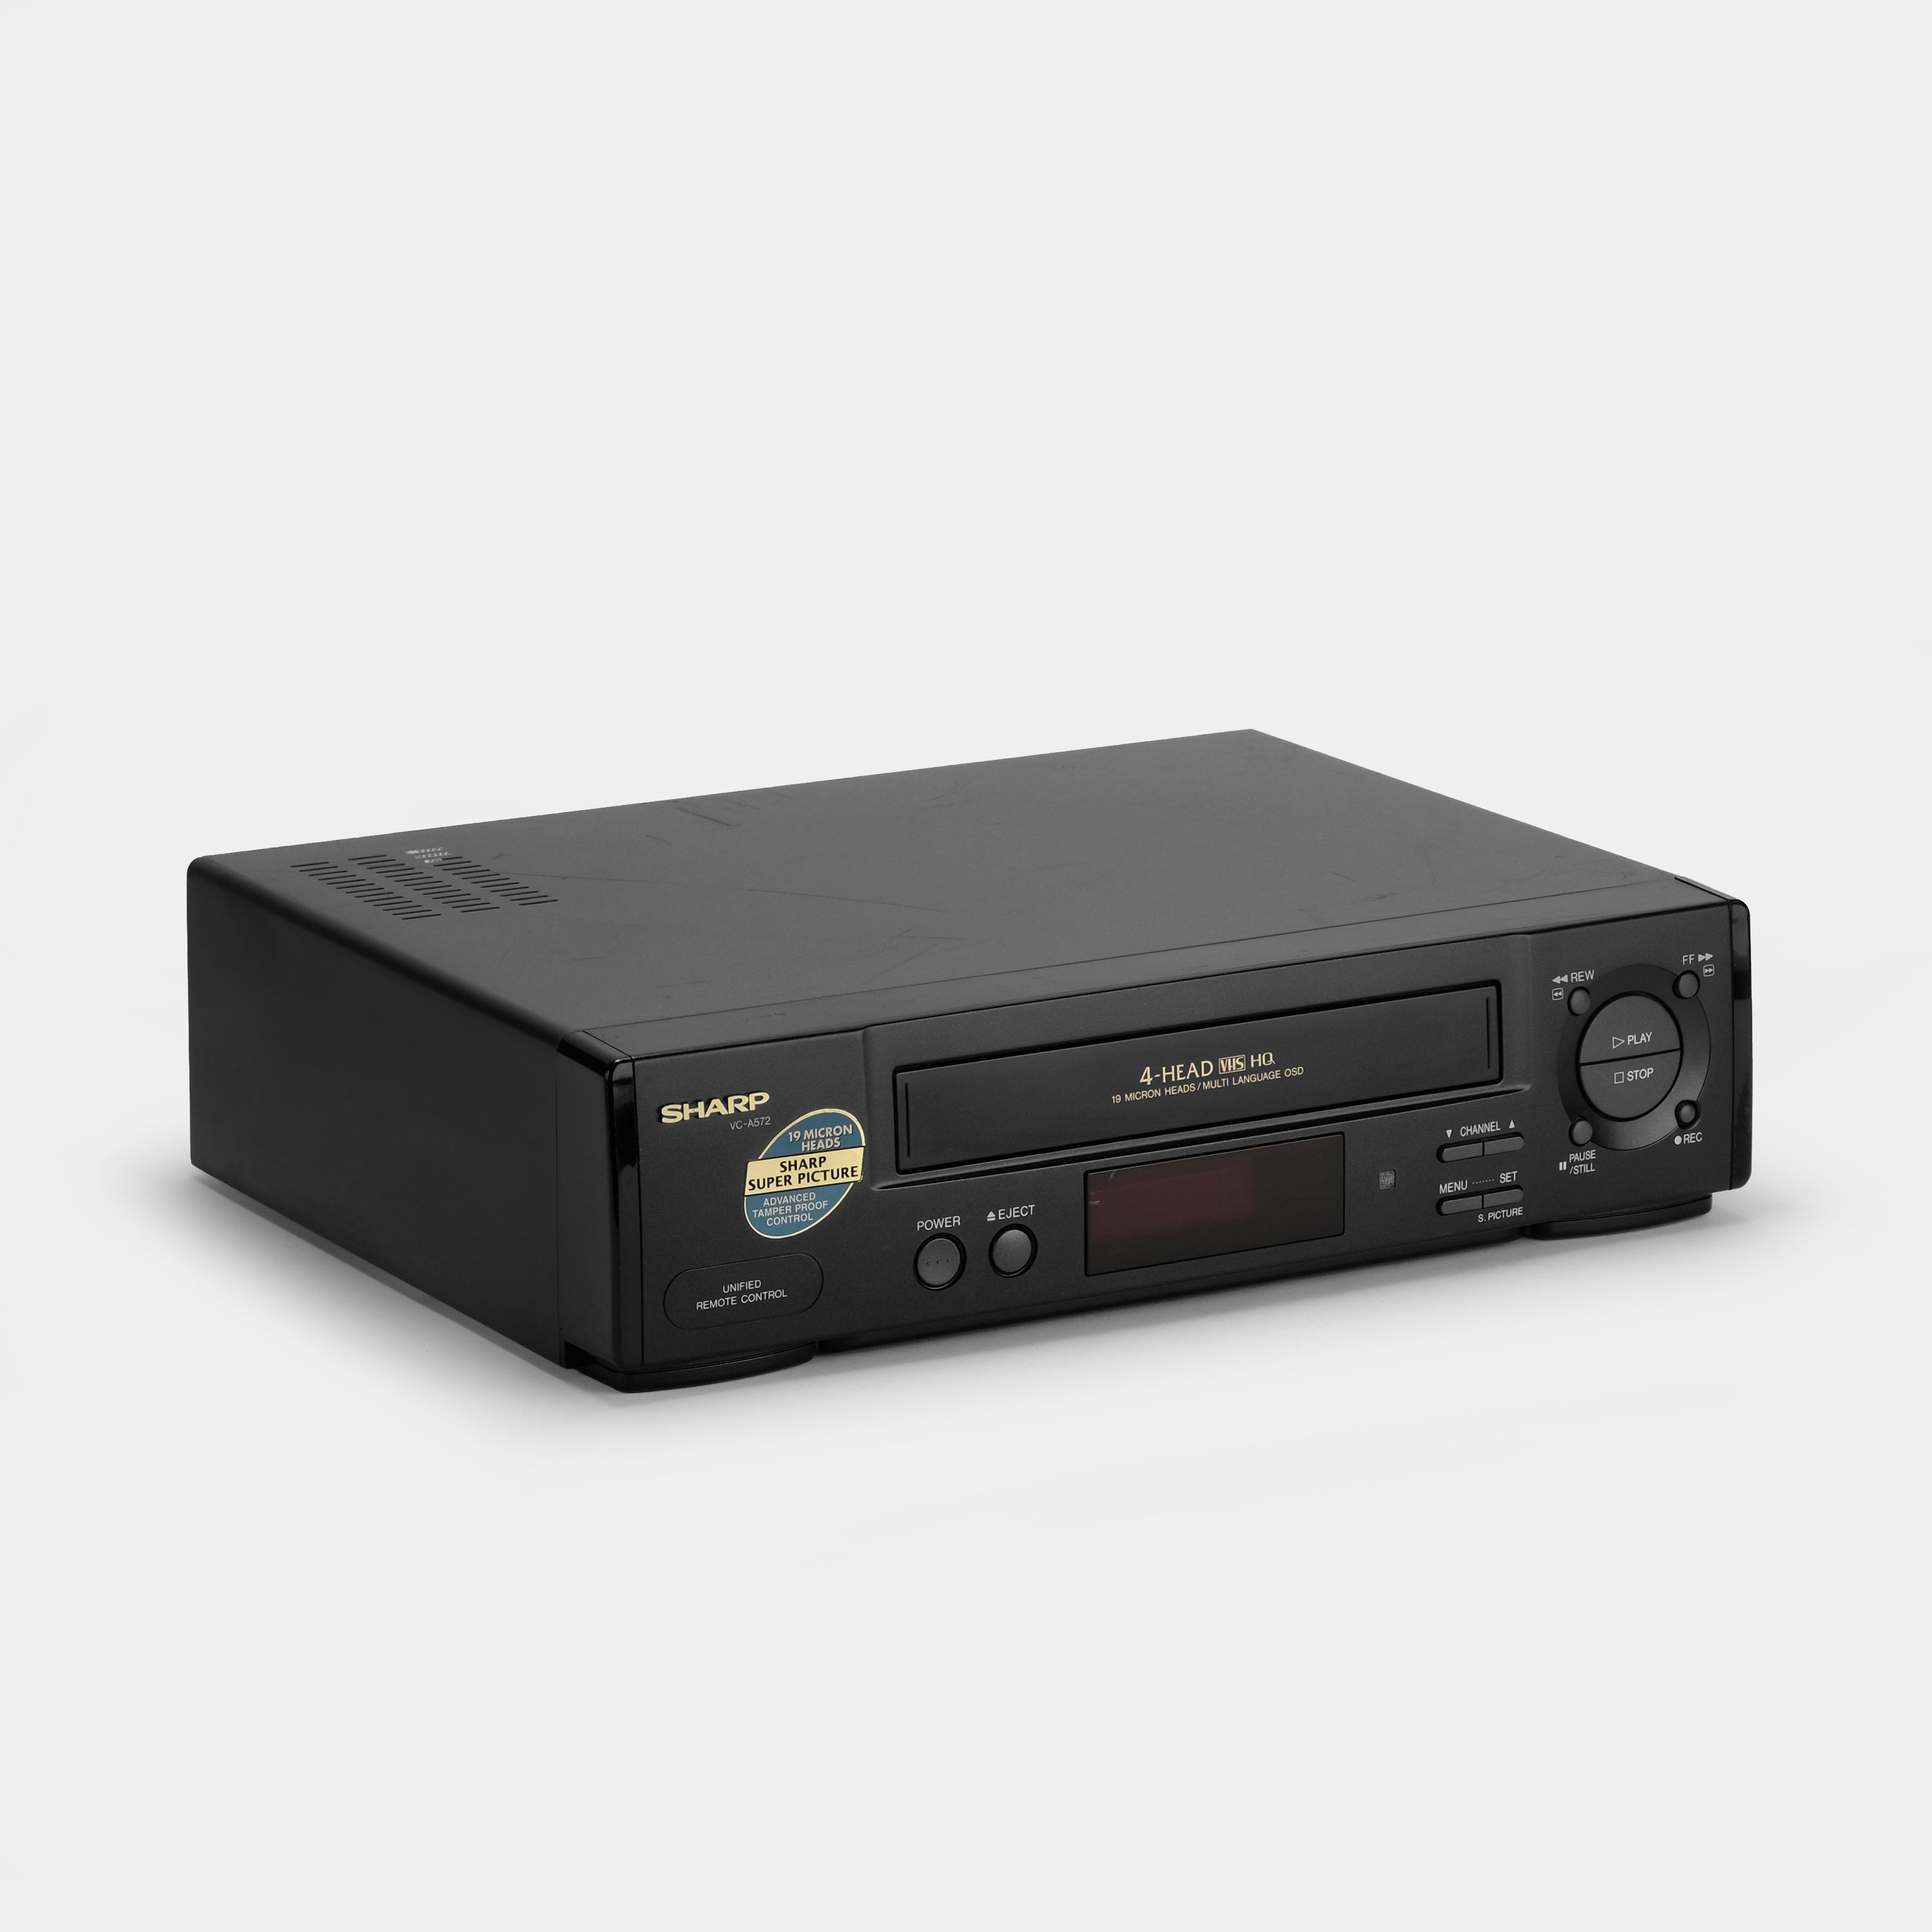 Sharp VC-A572U VCR VHS Player